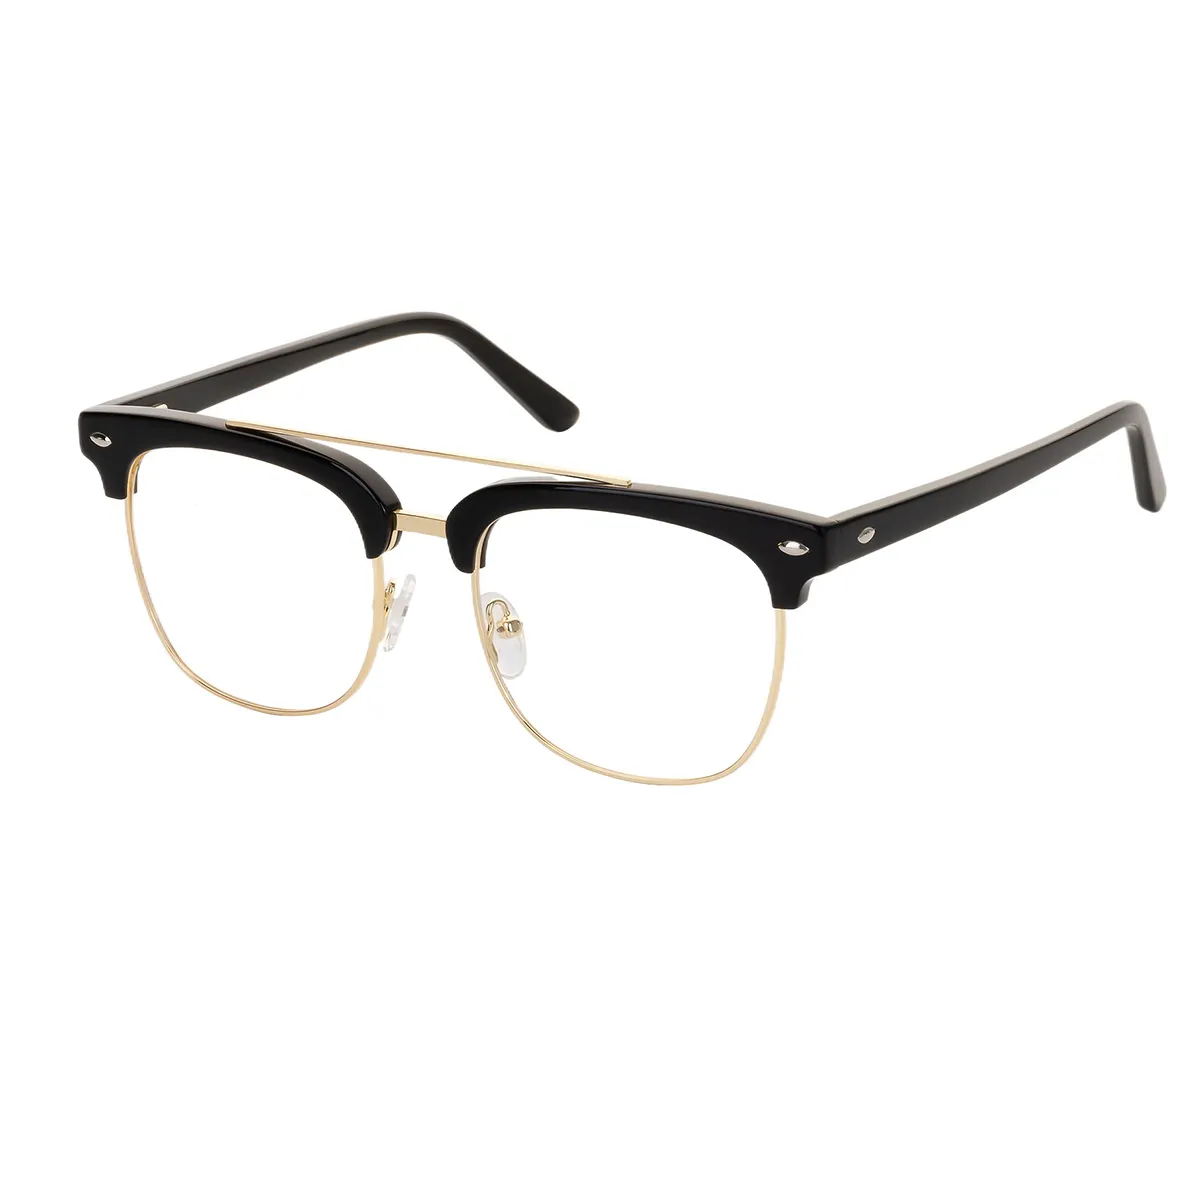 Tori - Browline Black Glasses for Men